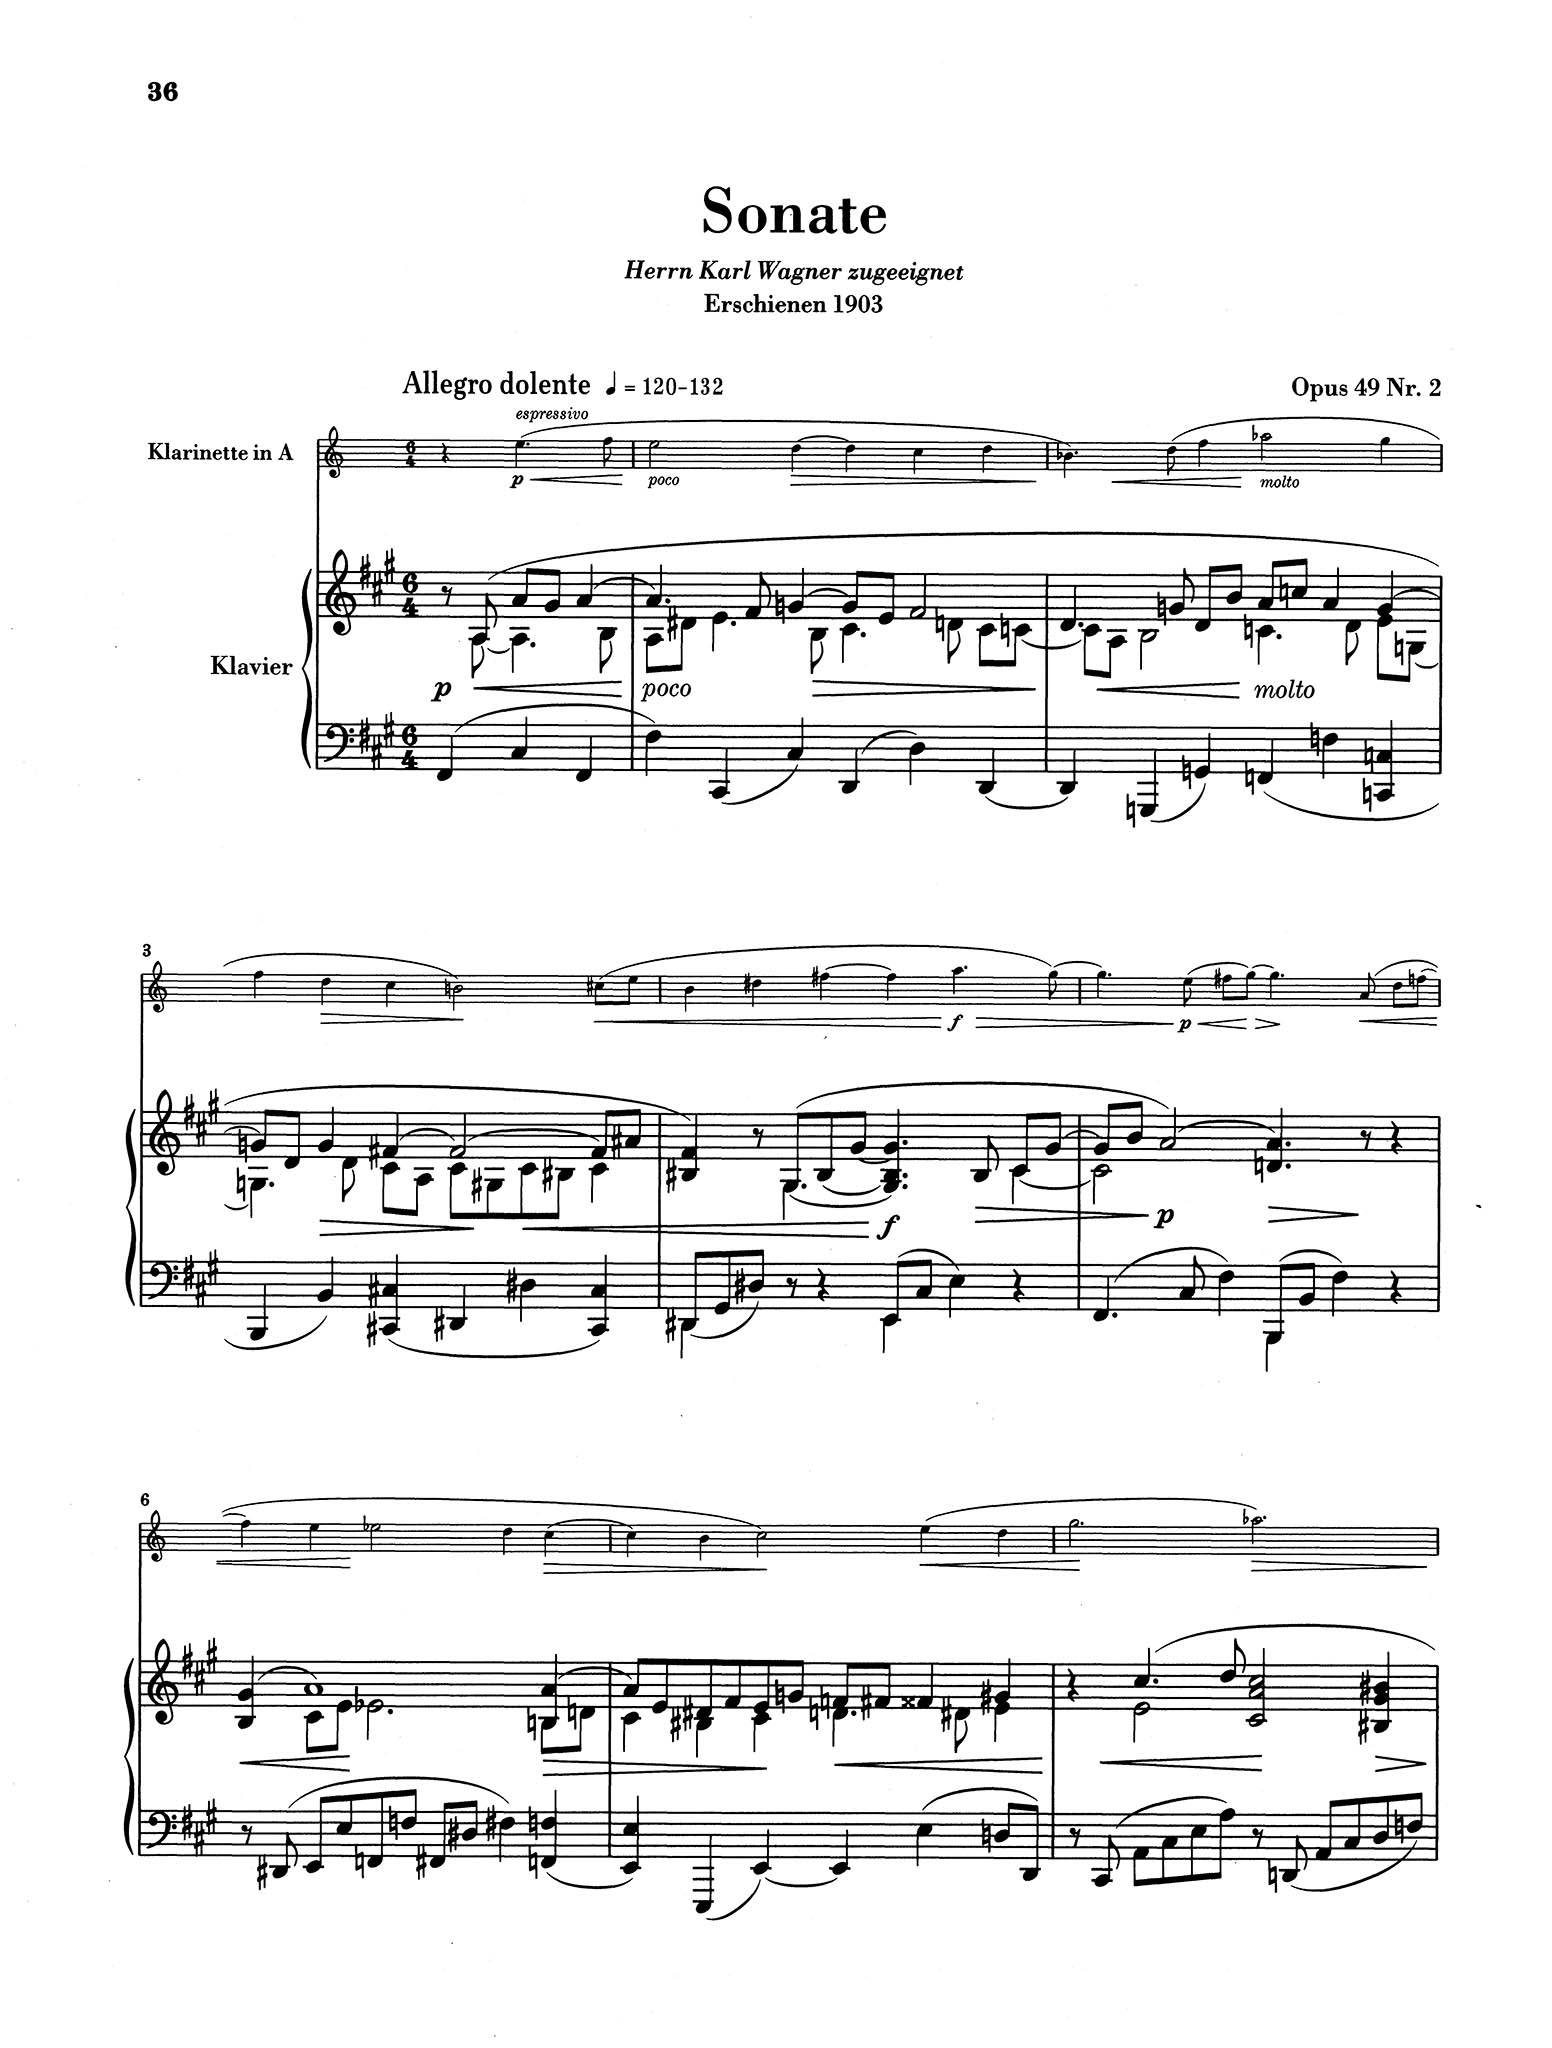 Sonata in F-sharp Minor, Op. 49 No. 2 - Movement 1